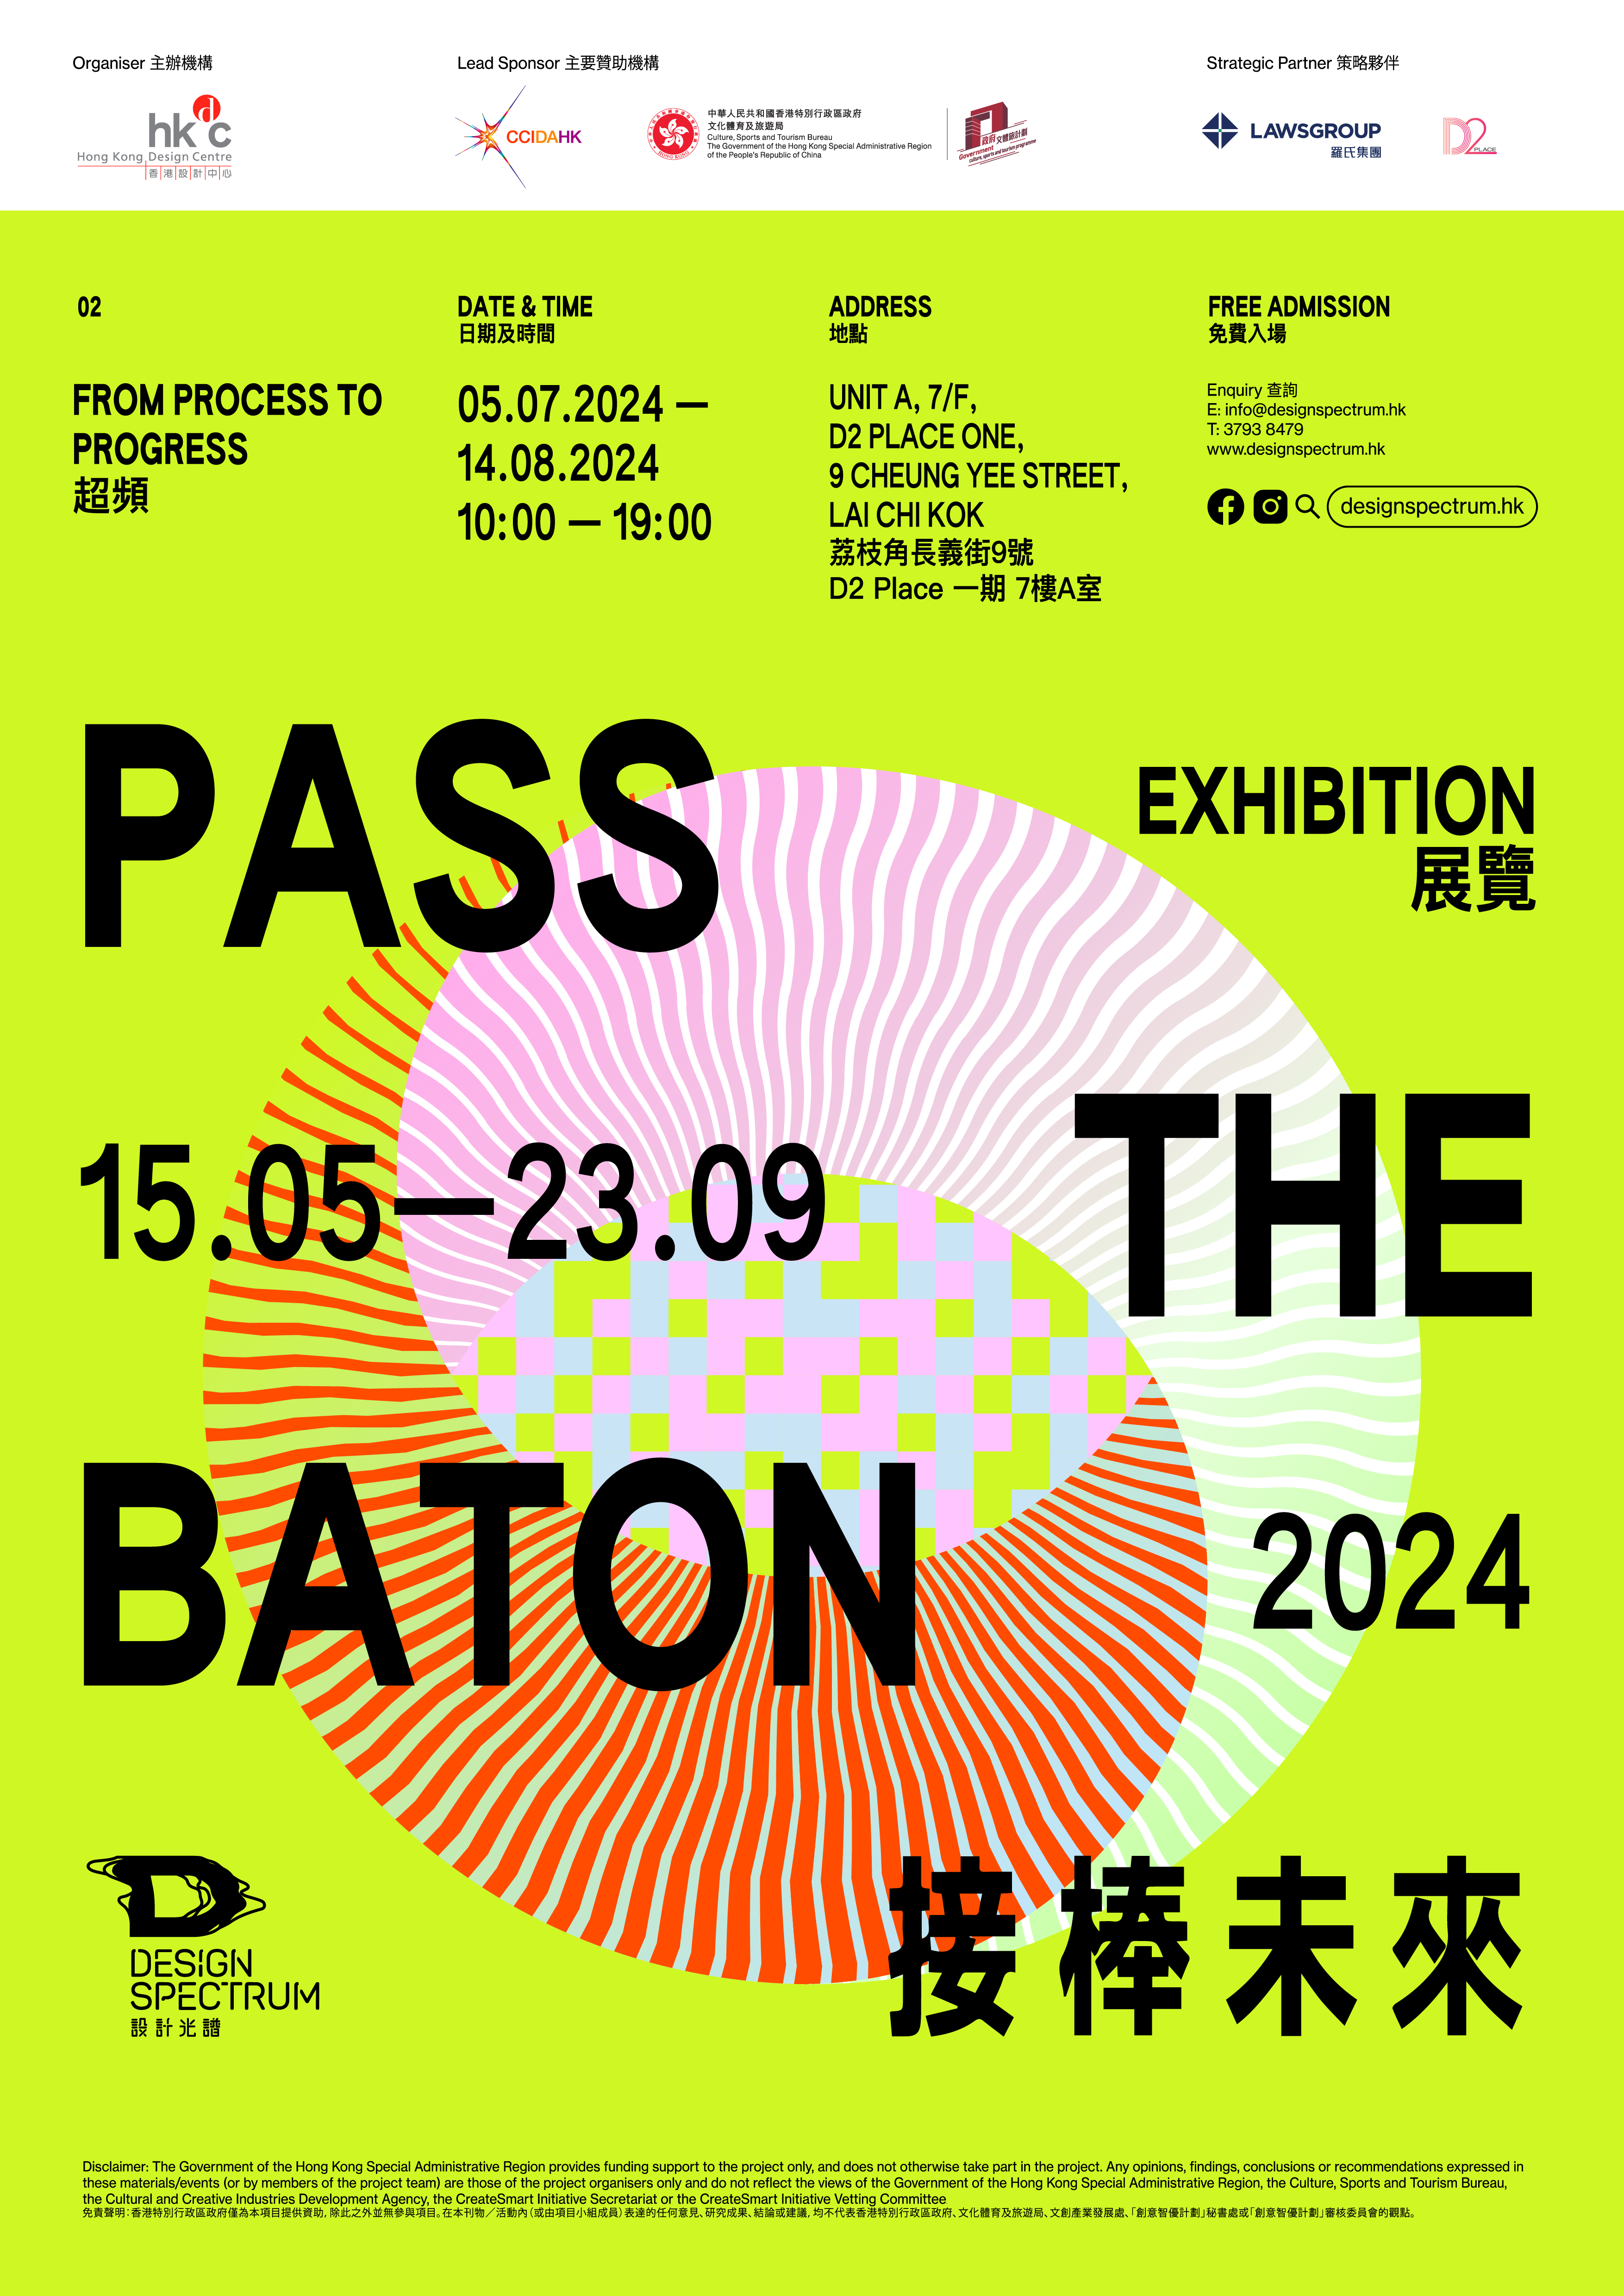 香港設計中心「設計光譜」呈獻——「接棒未來」展覽 第二部分「超頻」接力登場 超越既定想像 以設計力量推動創意過程之演進